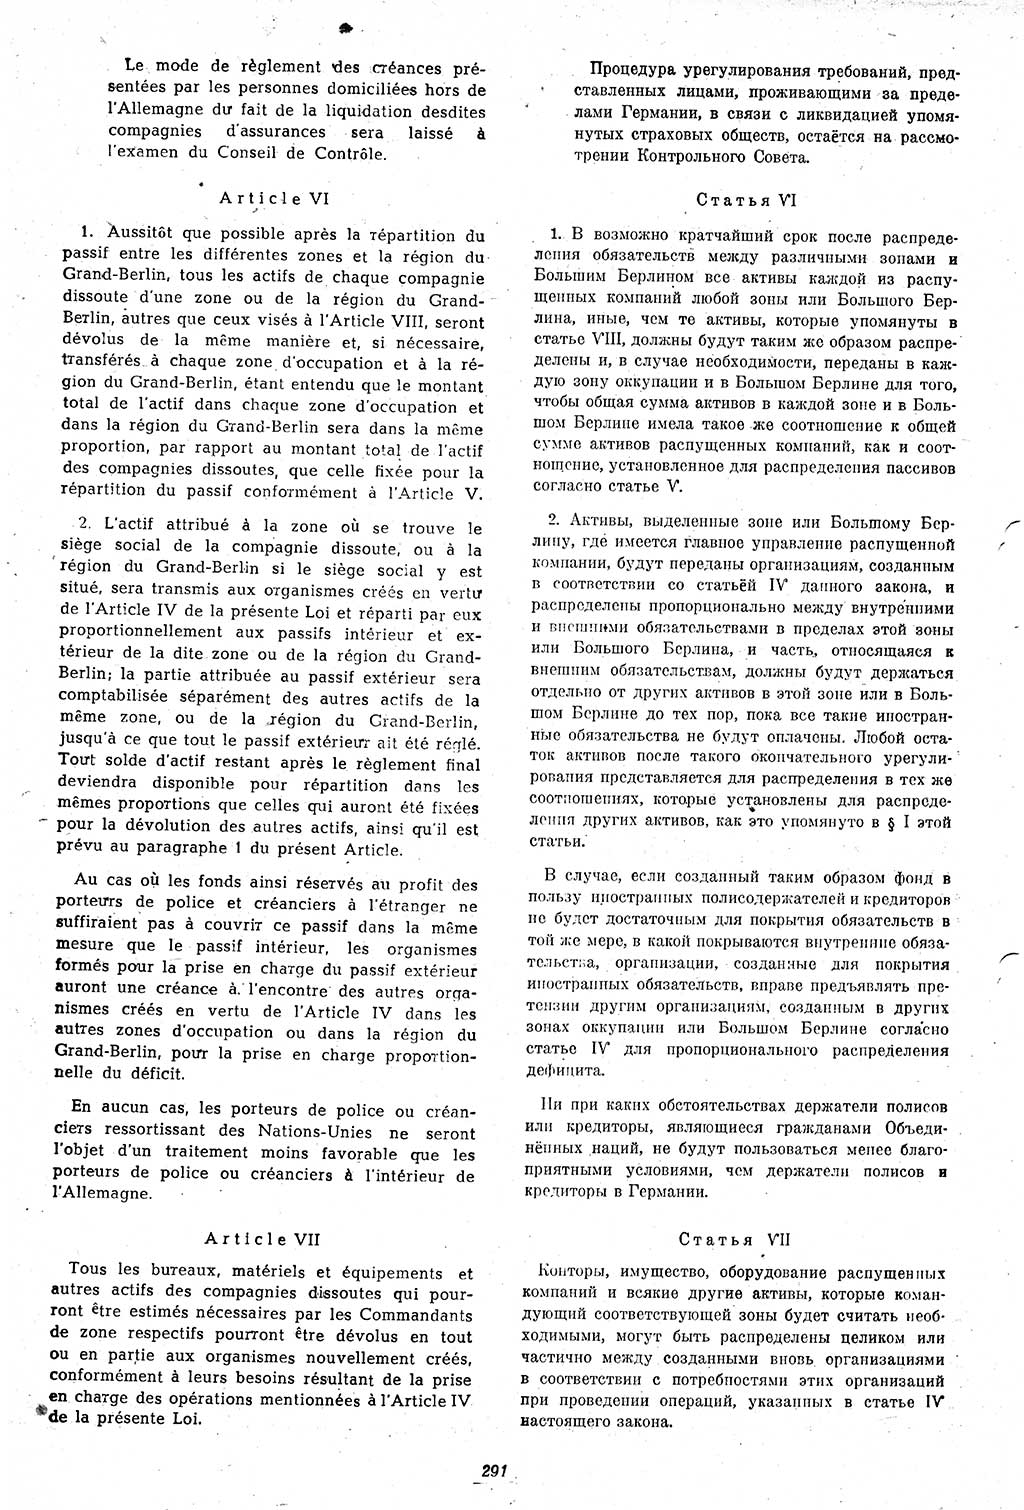 Amtsblatt des Kontrollrats (ABlKR) in Deutschland 1947, Seite 291/1 (ABlKR Dtl. 1947, S. 291/1)